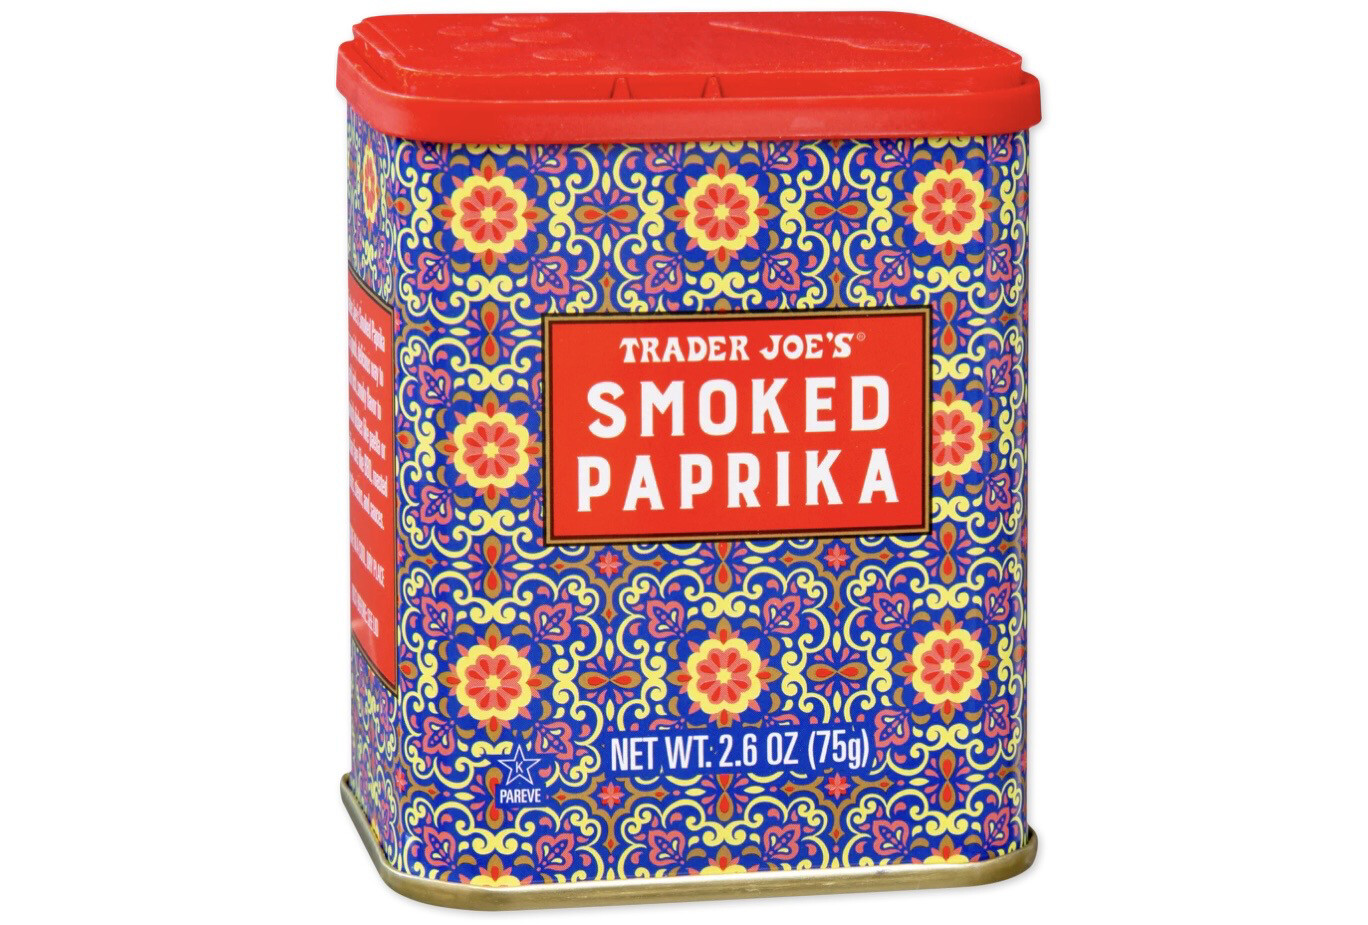 Trader Joe's Smoked Paprika Seasoning